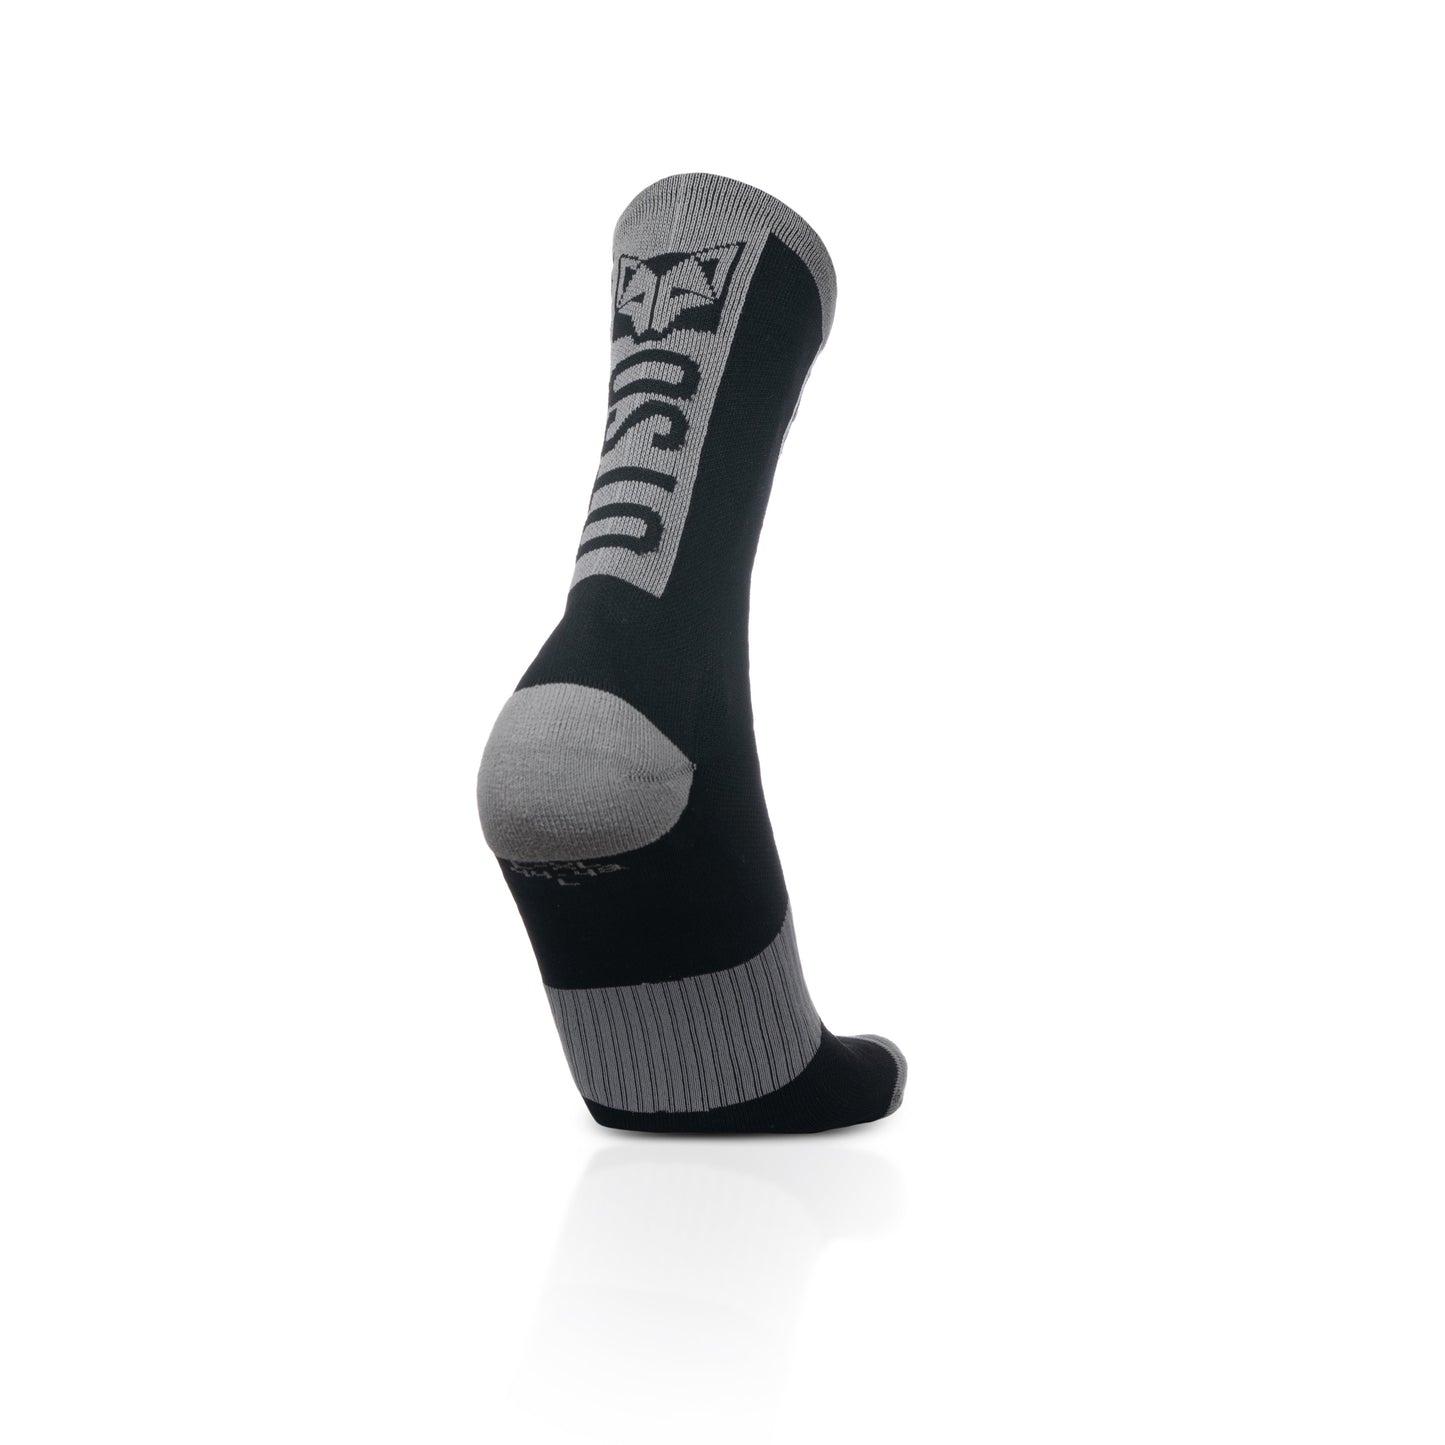 Cycling Socks High Cut Black & Silver Grey